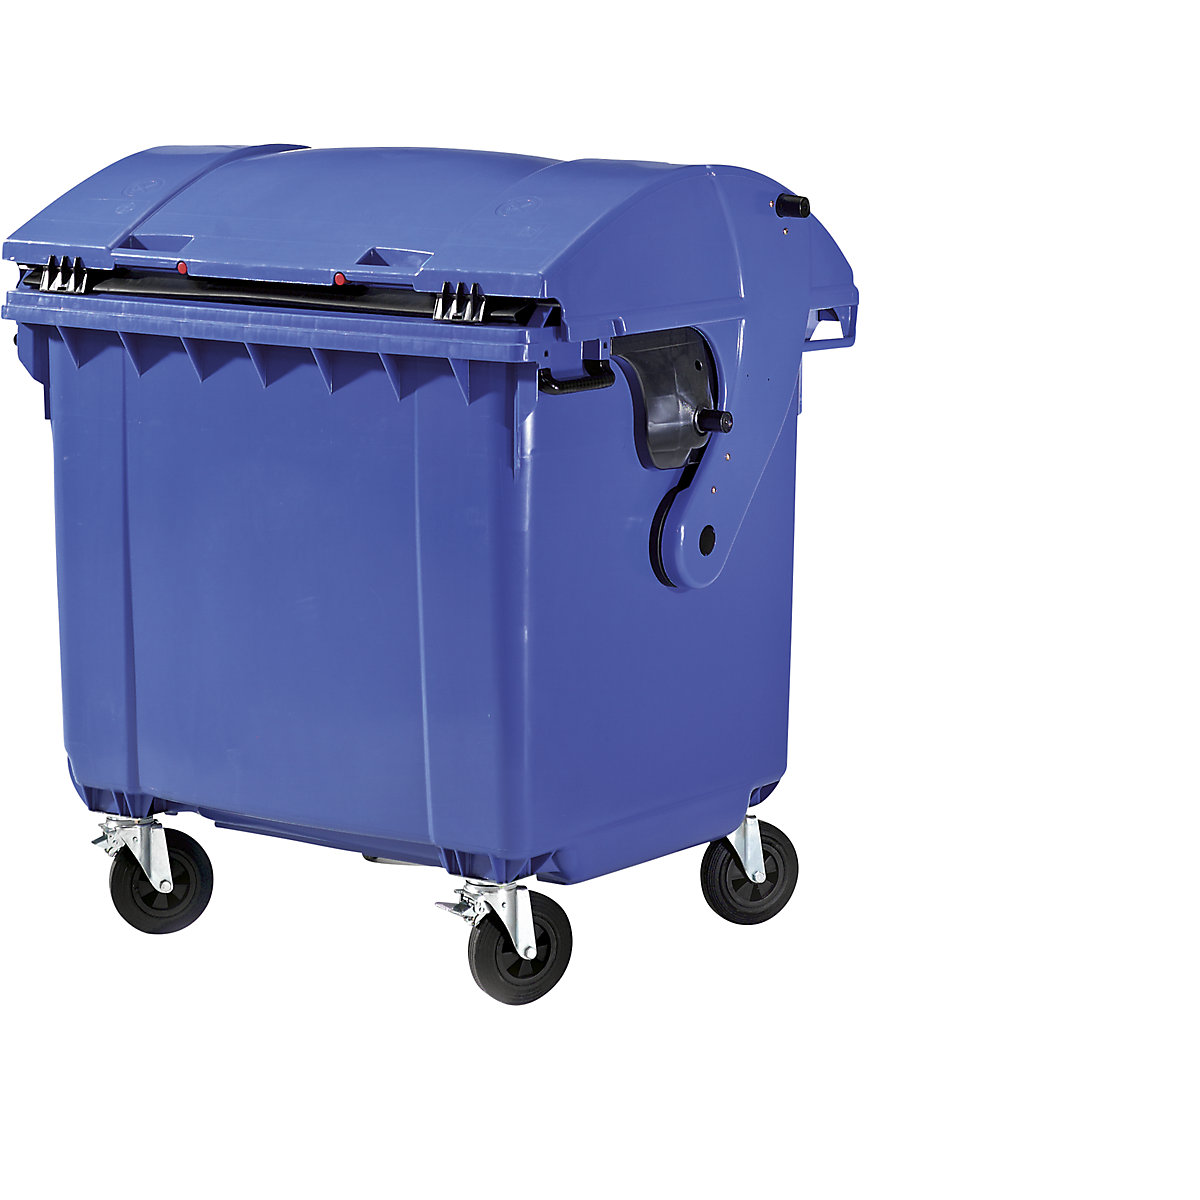 Afvalcontainer van kunststof, DIN EN 840, Inhoud 1100 l, h x b x d = 1360 x 1465 x 1100 mm, schuifdeksel, beveiliging voor kinderen, blauw-4